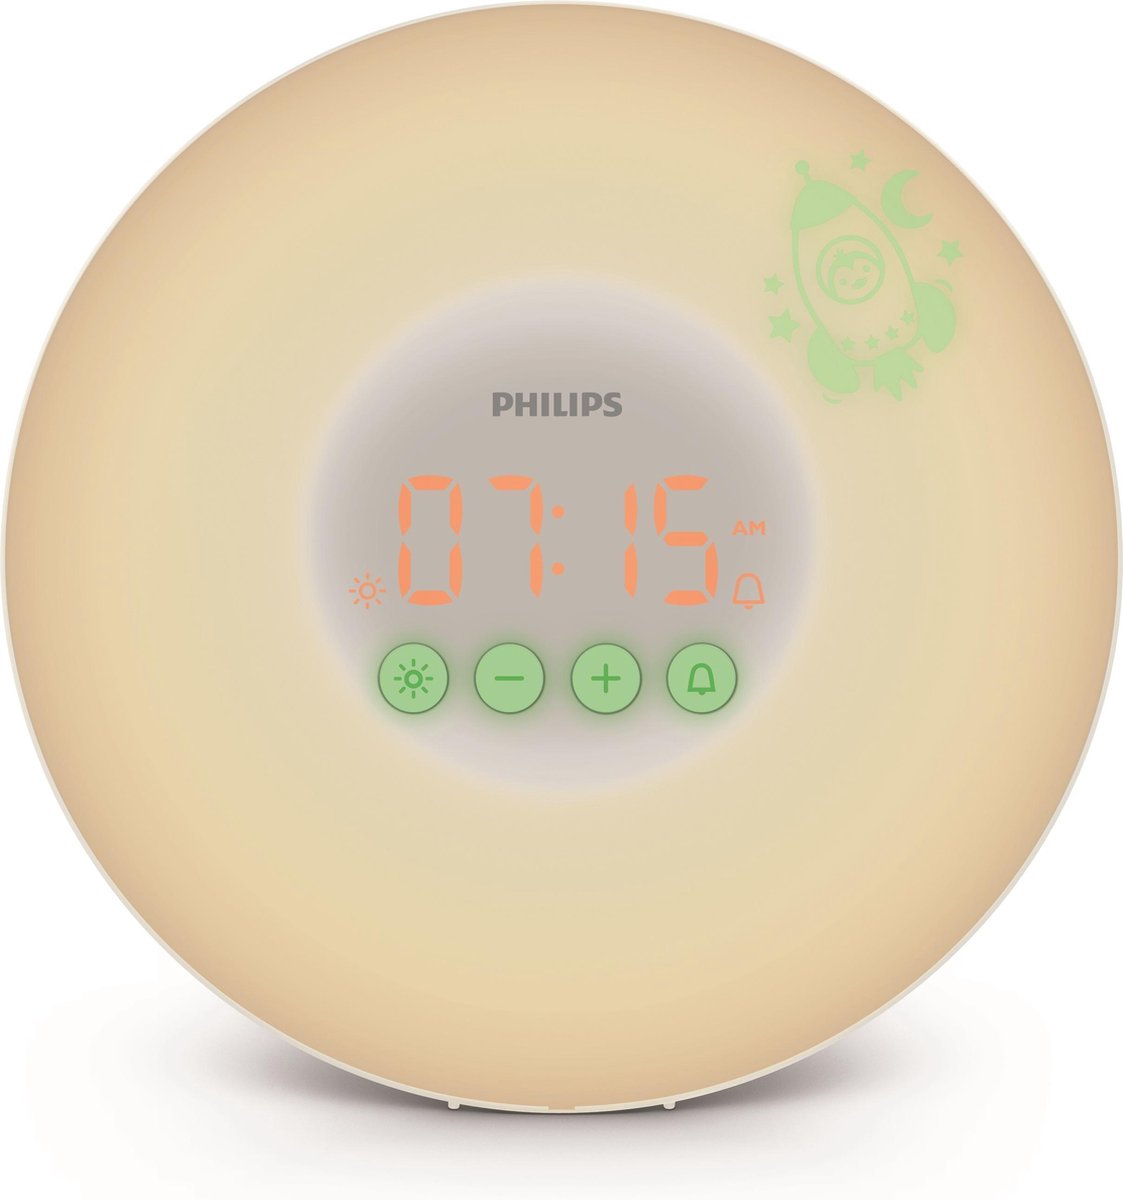 uitlaat slijtage in verlegenheid gebracht Philips HF3503/01 - Wake-up Light for kids | bol.com